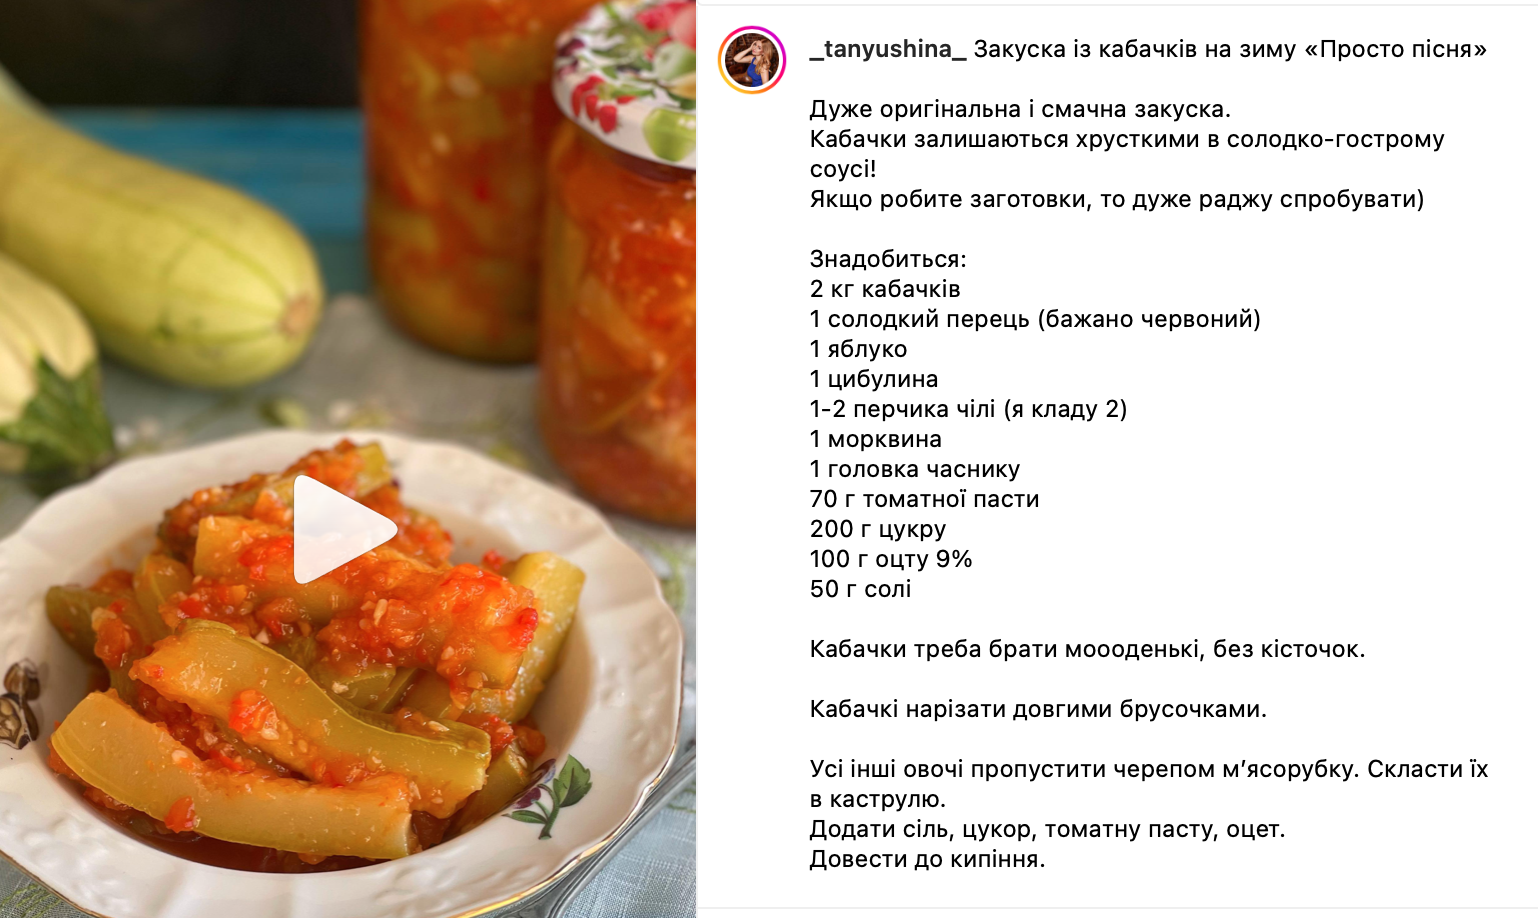 Рецепт кабачков в соусе